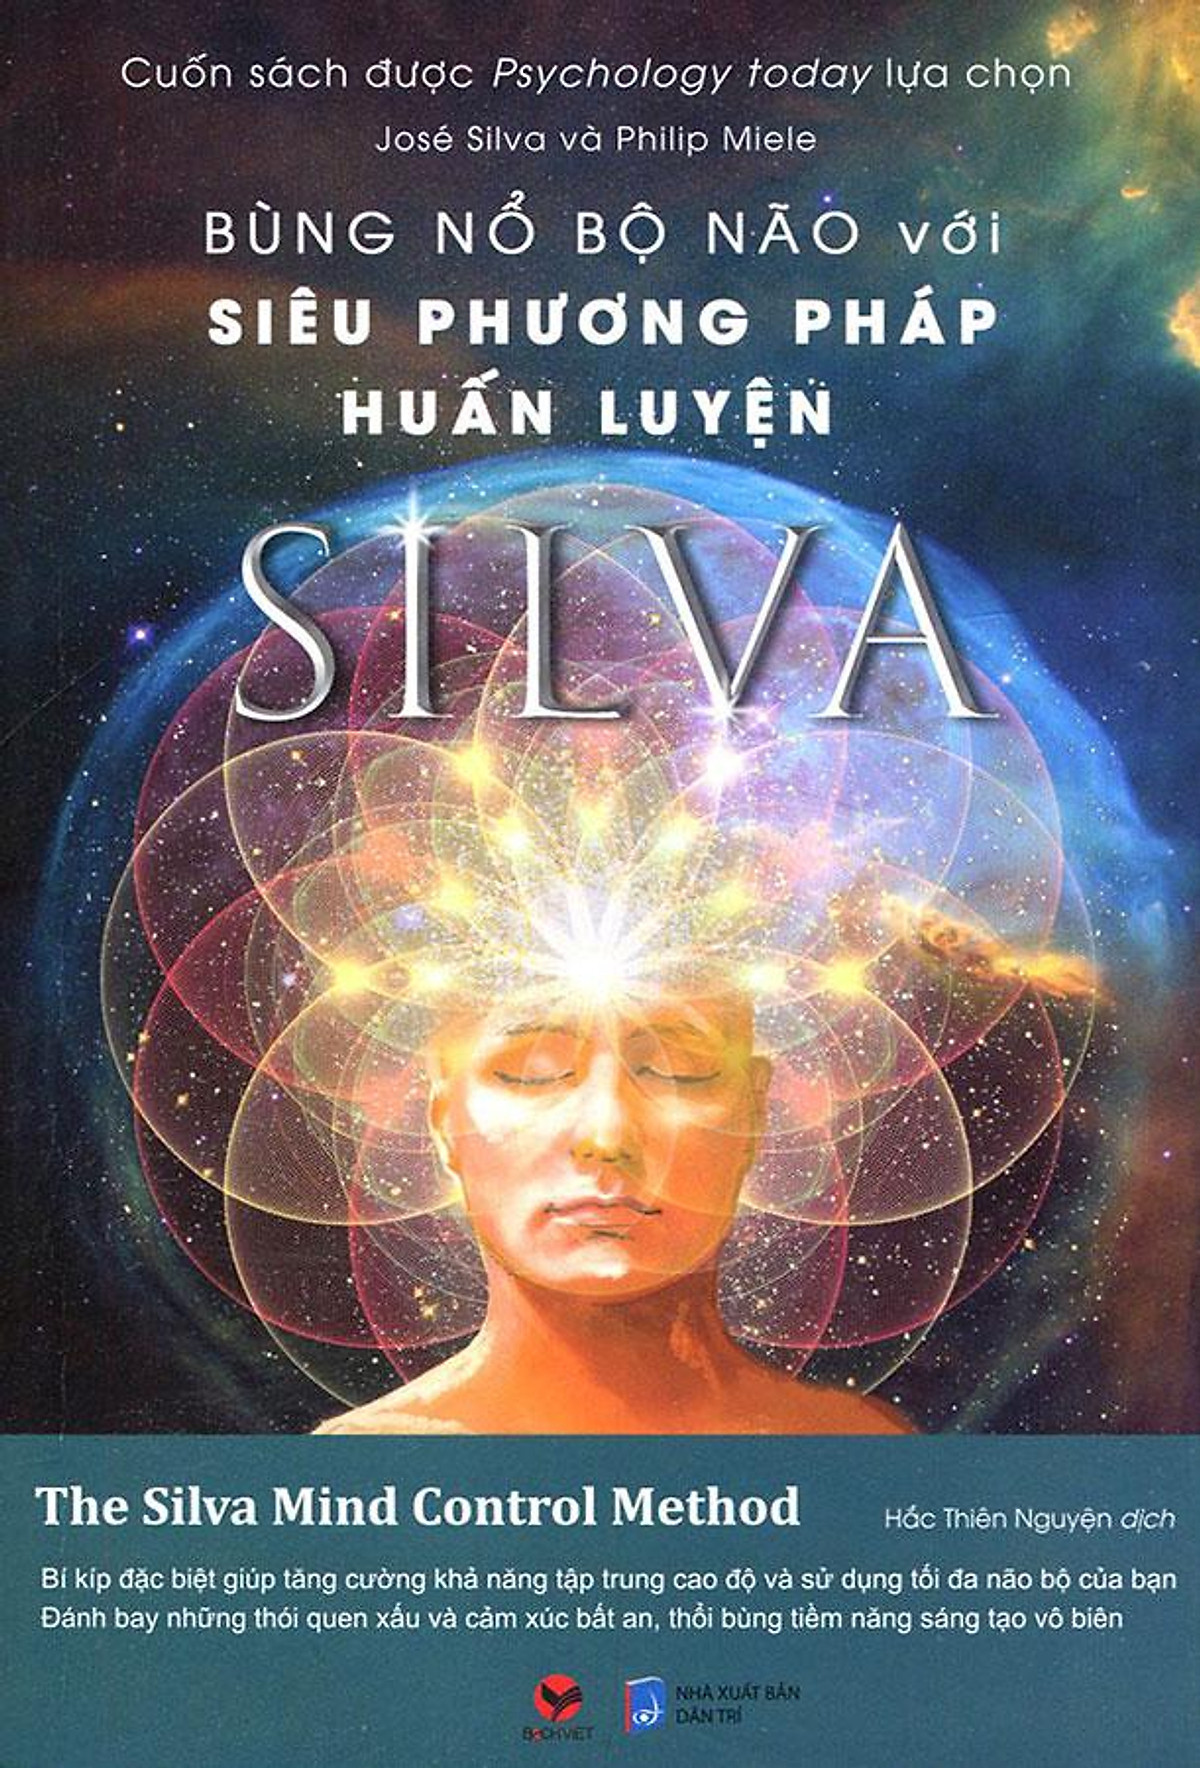 Bùng Nổ Bộ Não Với Siêu Phương Pháp Huấn Luyện Silva - Jose Silva & Philip Miele - Hắc Thiên Nguyện dịch - (bìa mềm)